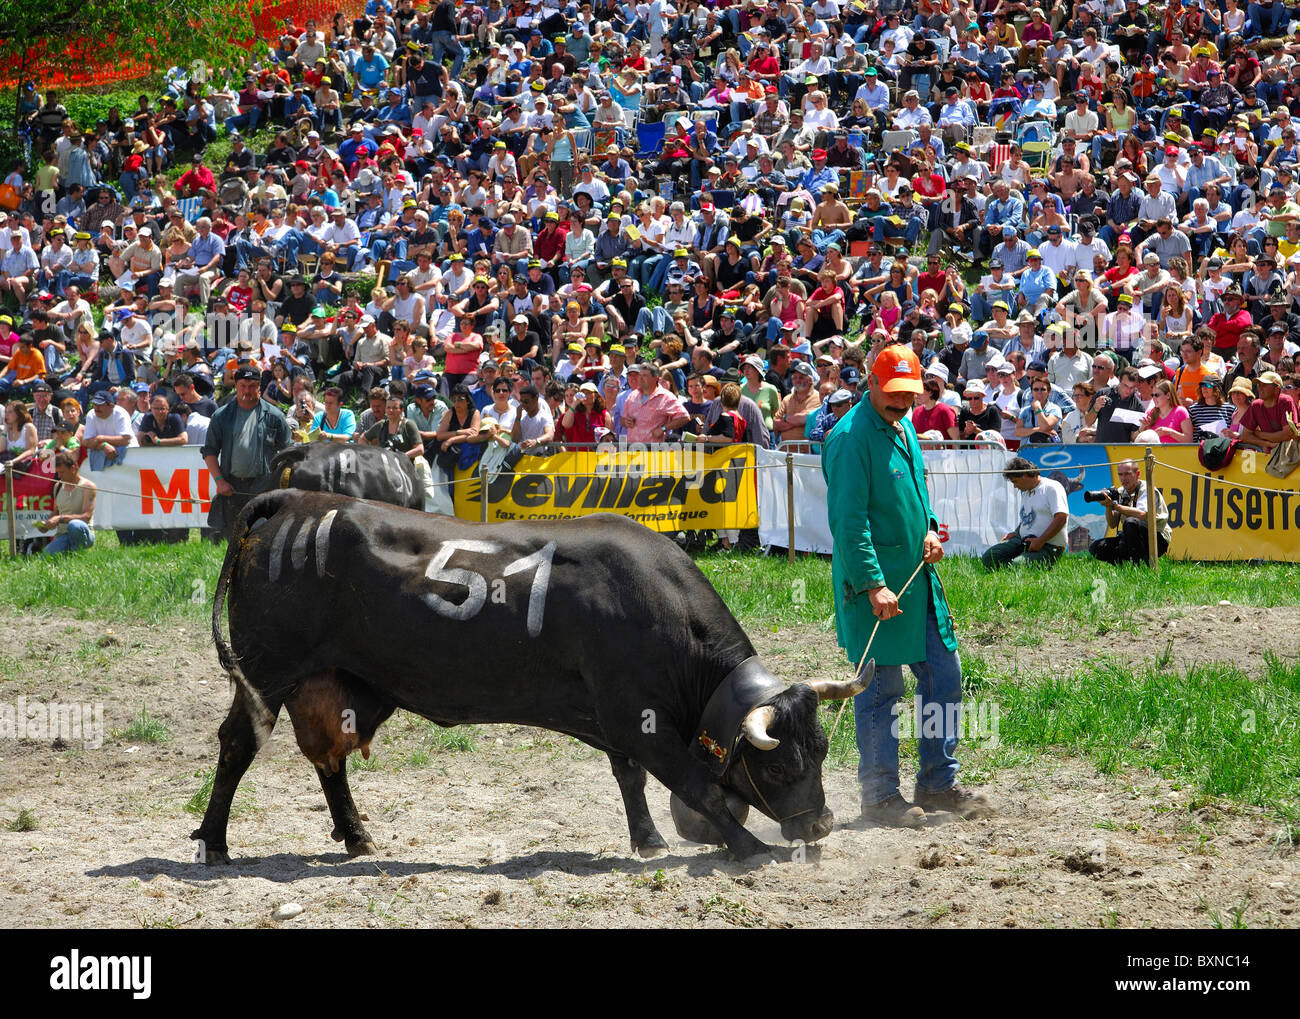 Présentant son fermier vache Herens combats dans le ring, Combat de reines,  les combats de reines Aproz, Suisse, Valais, Suisse Photo Stock - Alamy